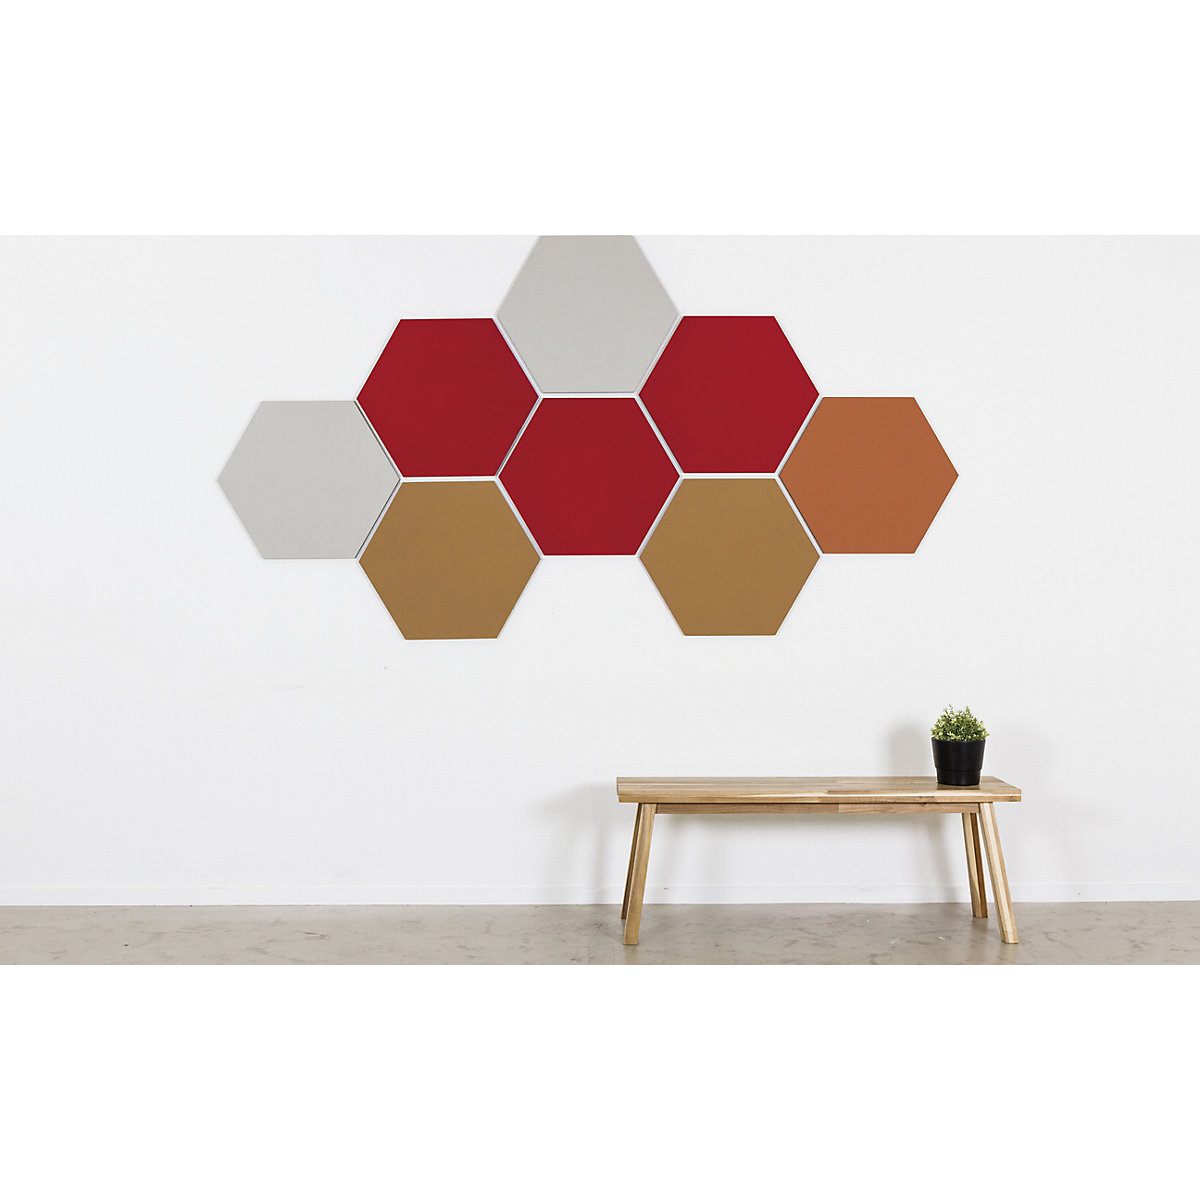 Quadro de pinos com design hexagonal – Chameleon (Imagem do produto 13)-12